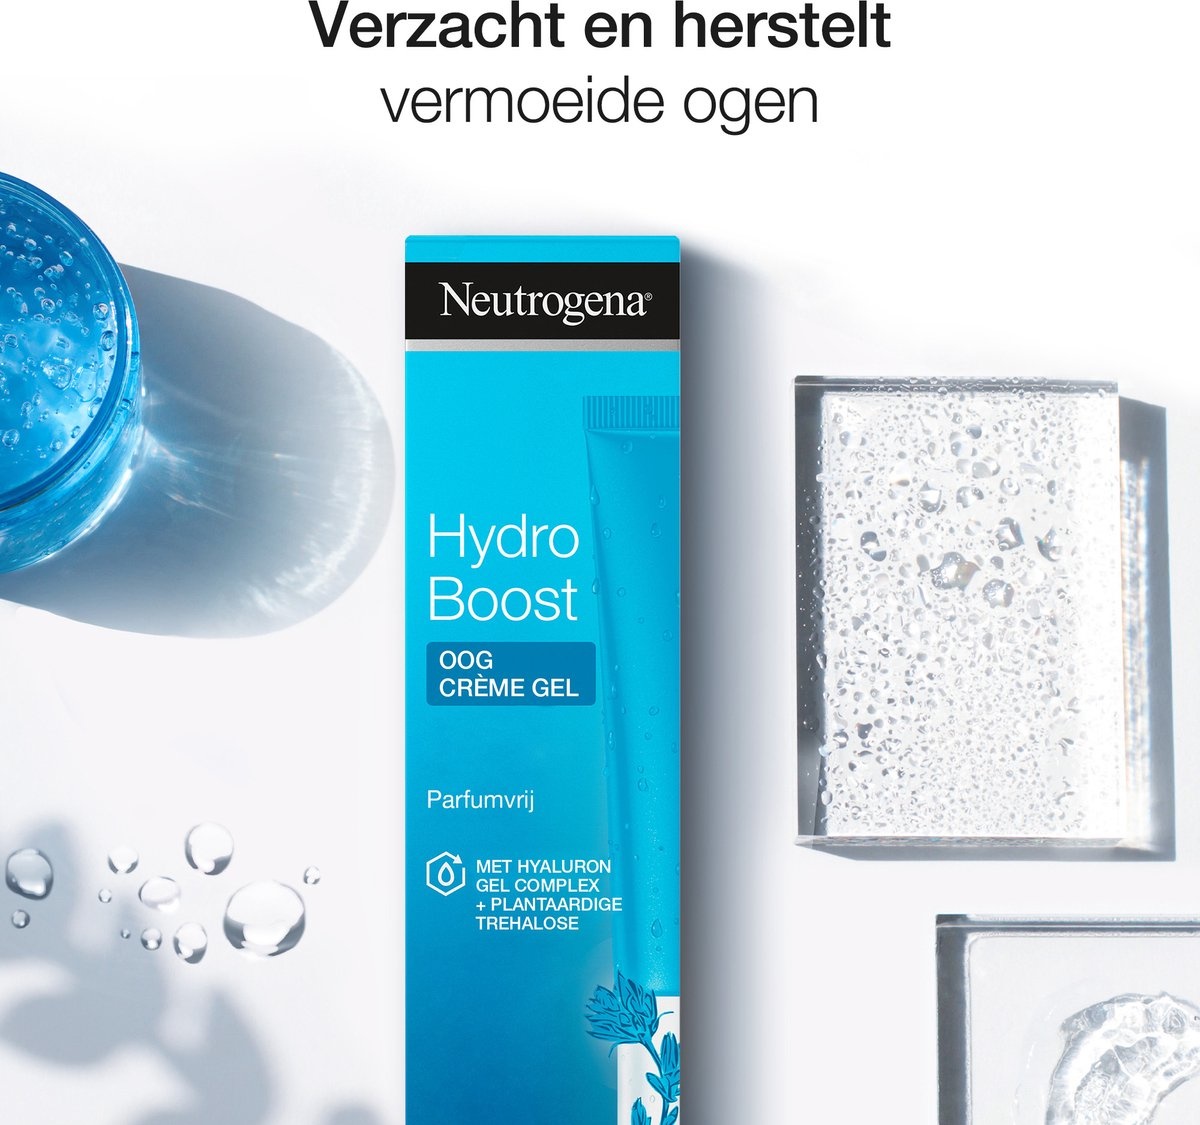 Neutrogena Hydro Boost Augencreme - Verpackung beschädigt